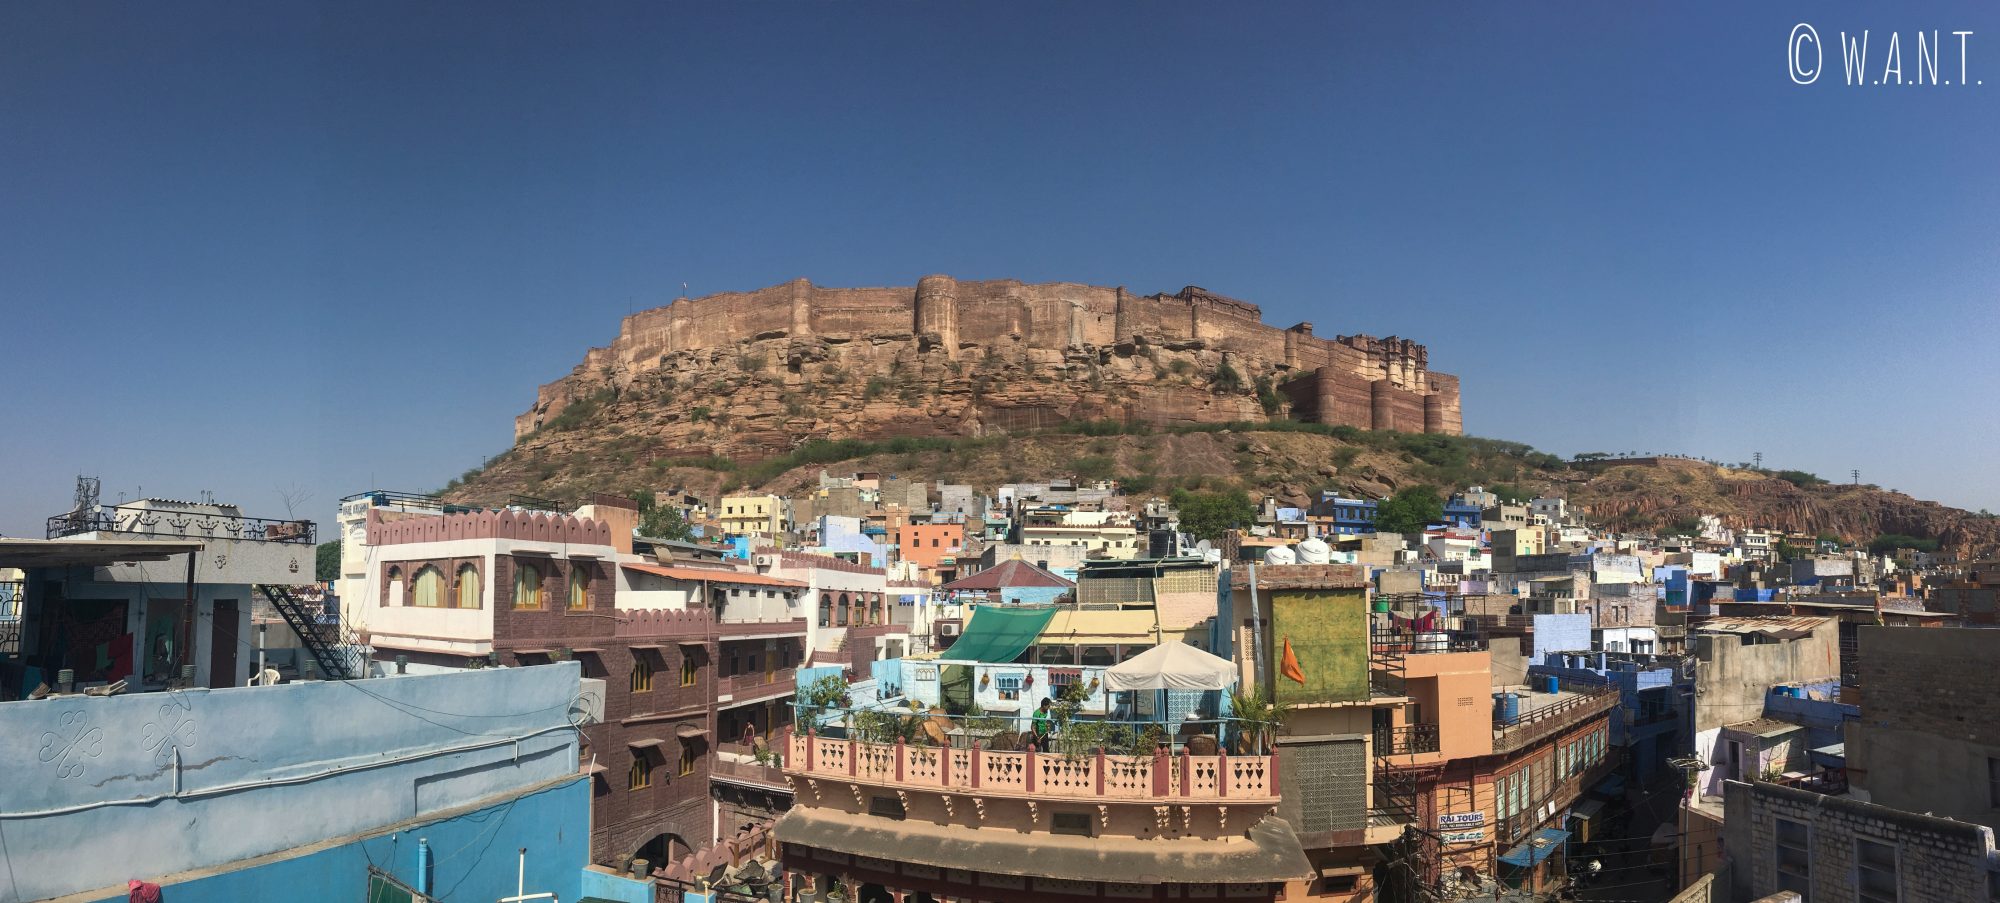 Vue sur le fort de Mehrangarh de Jodhpur depuis le rooftop de notre hôtel